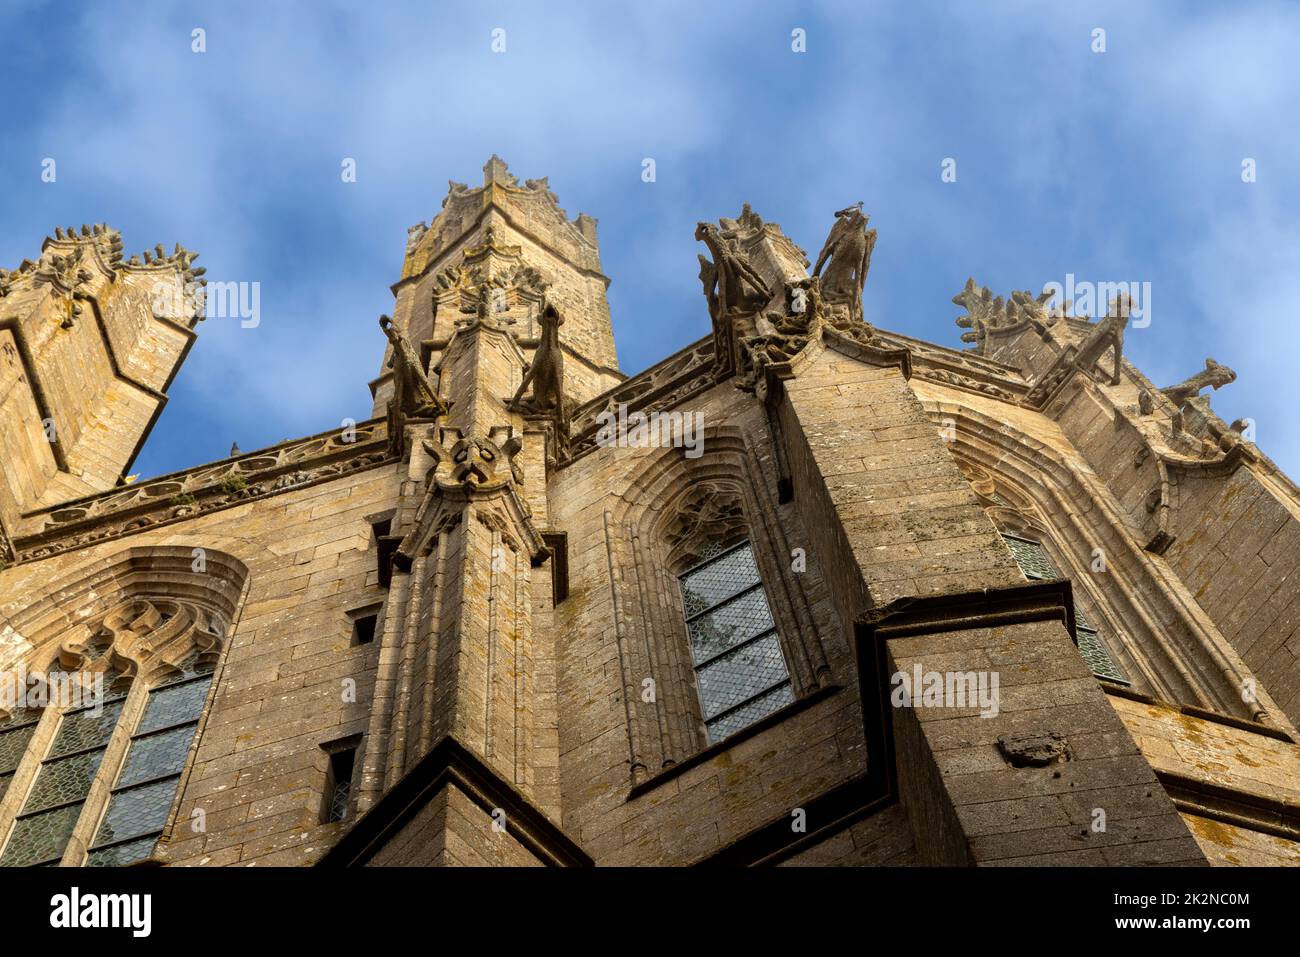 Gekäkelte Zinnen und Wasserspeier, architektonische Details der mittelalterlichen Abtei Le Mont Saint-Michel, Avranches, Normandie, Frankreich. Stockfoto